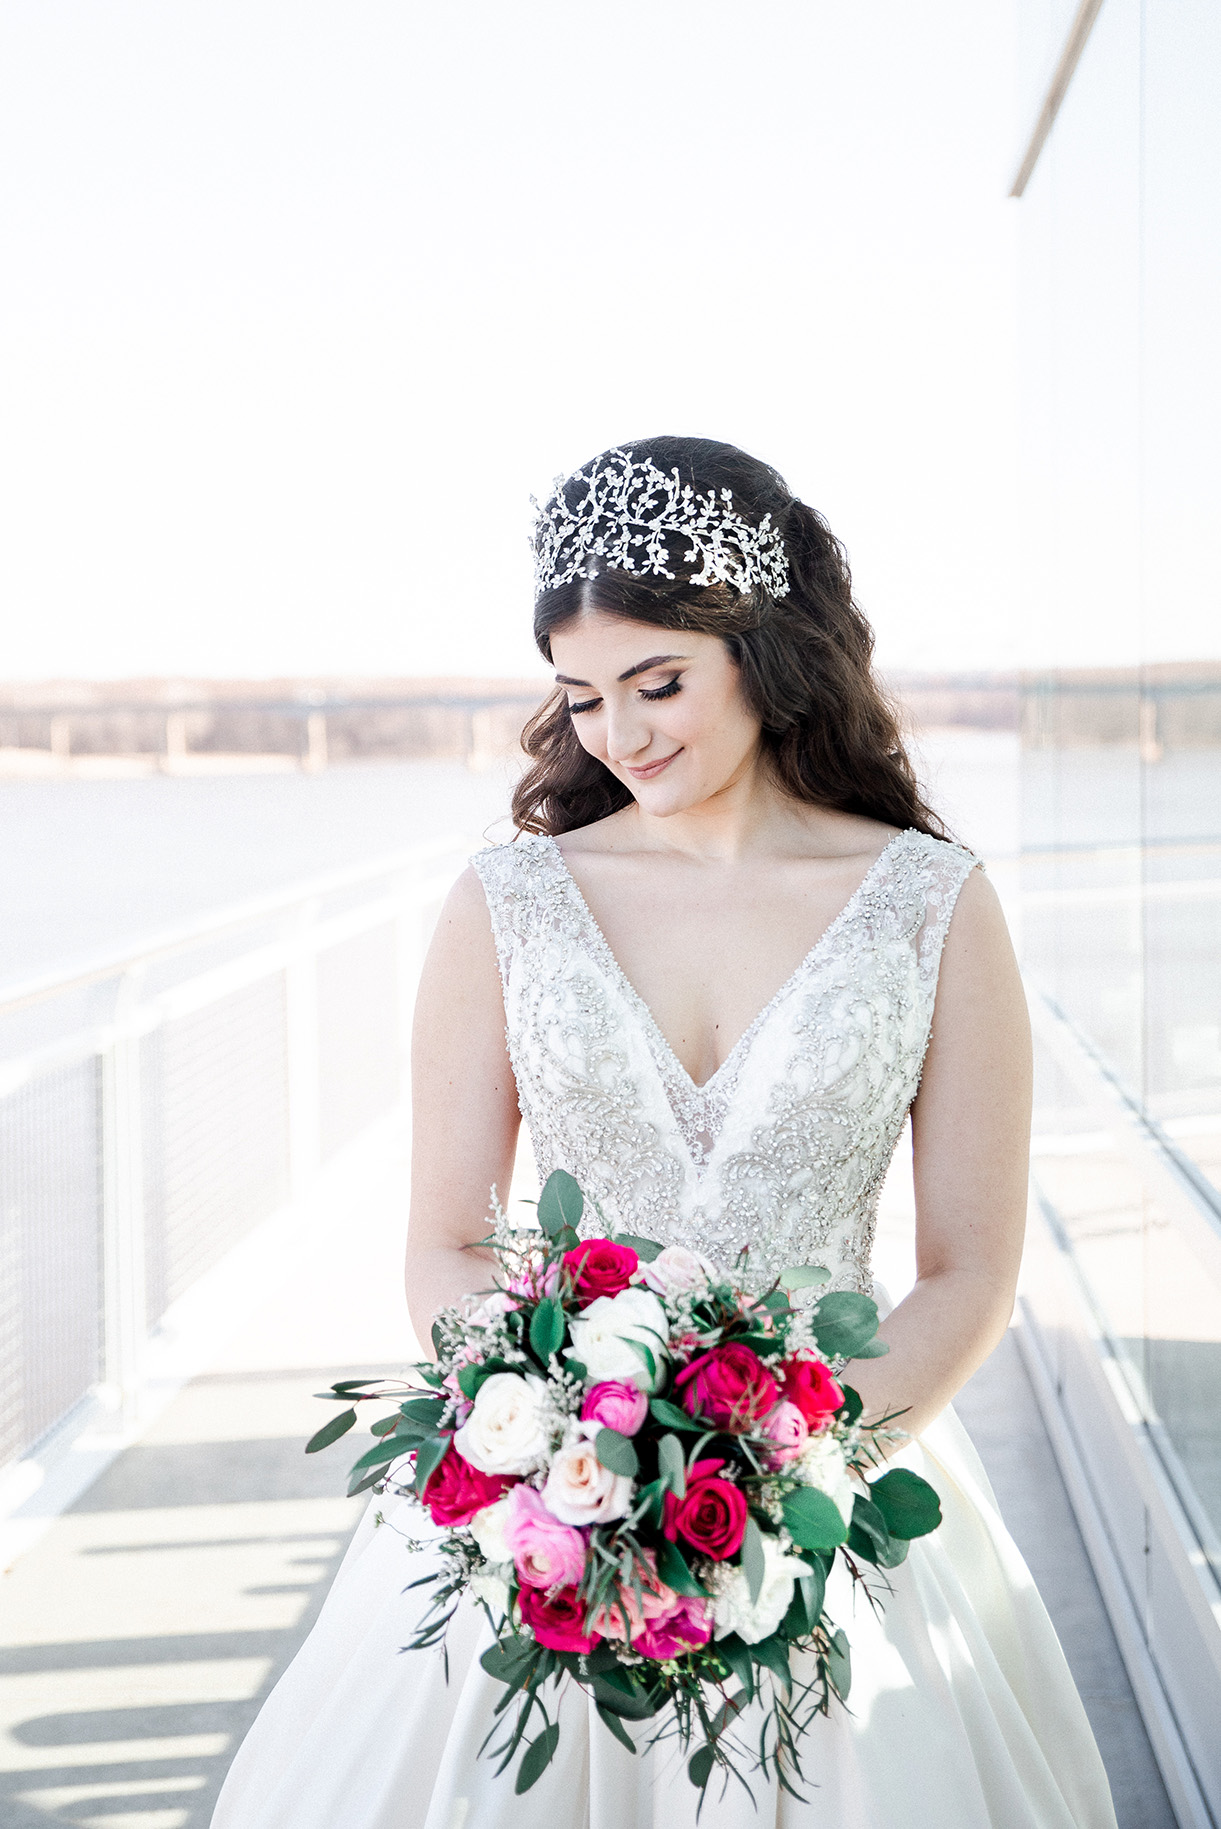 hair piece, hair crown, bridal bouquet, wedding bouquet